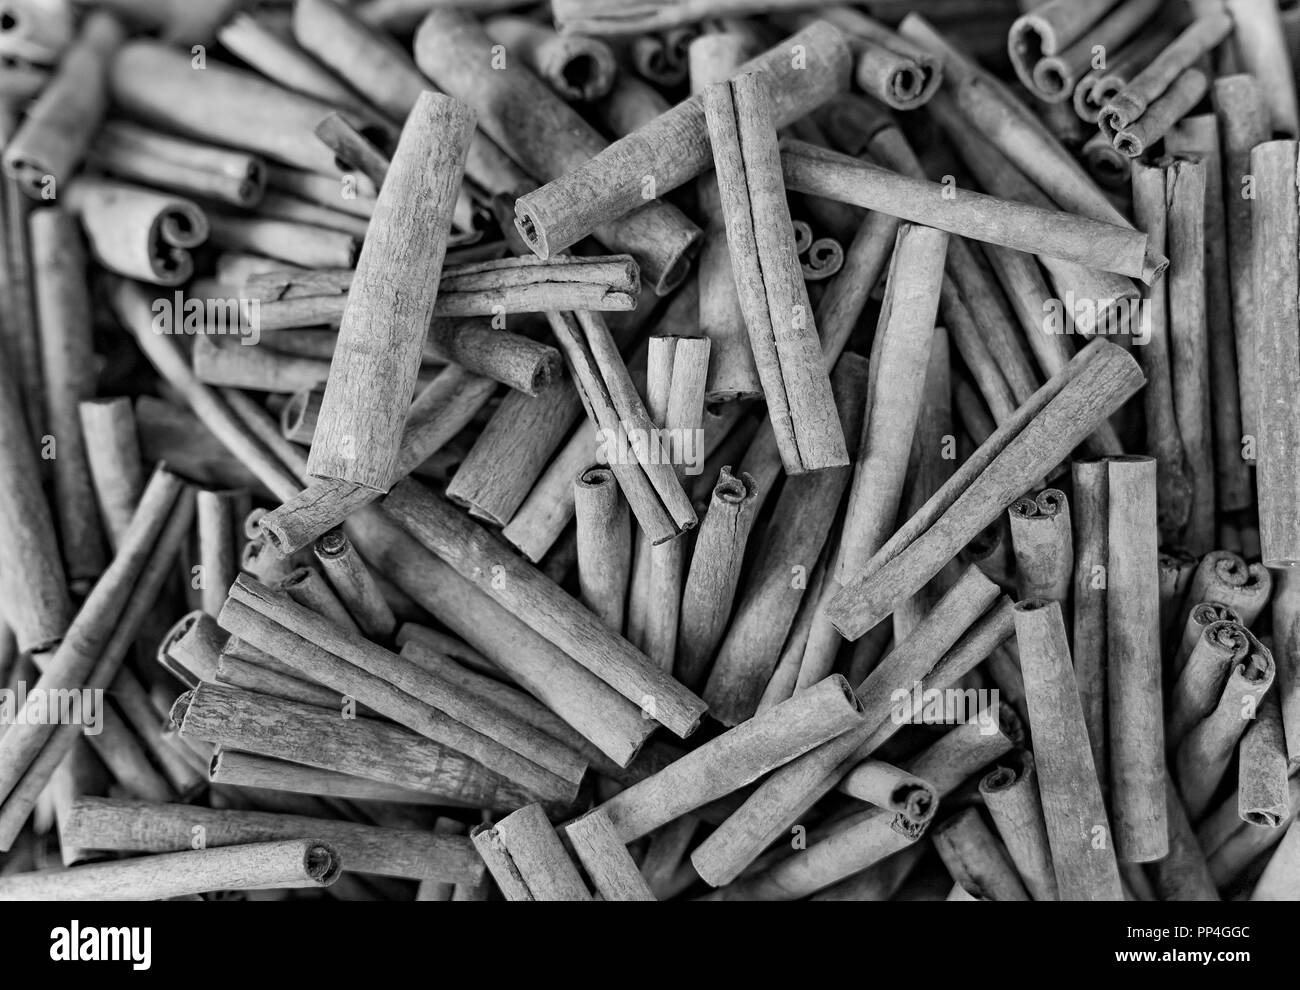 Bastoncini di cannella in un bazar, in bianco e nero Foto Stock